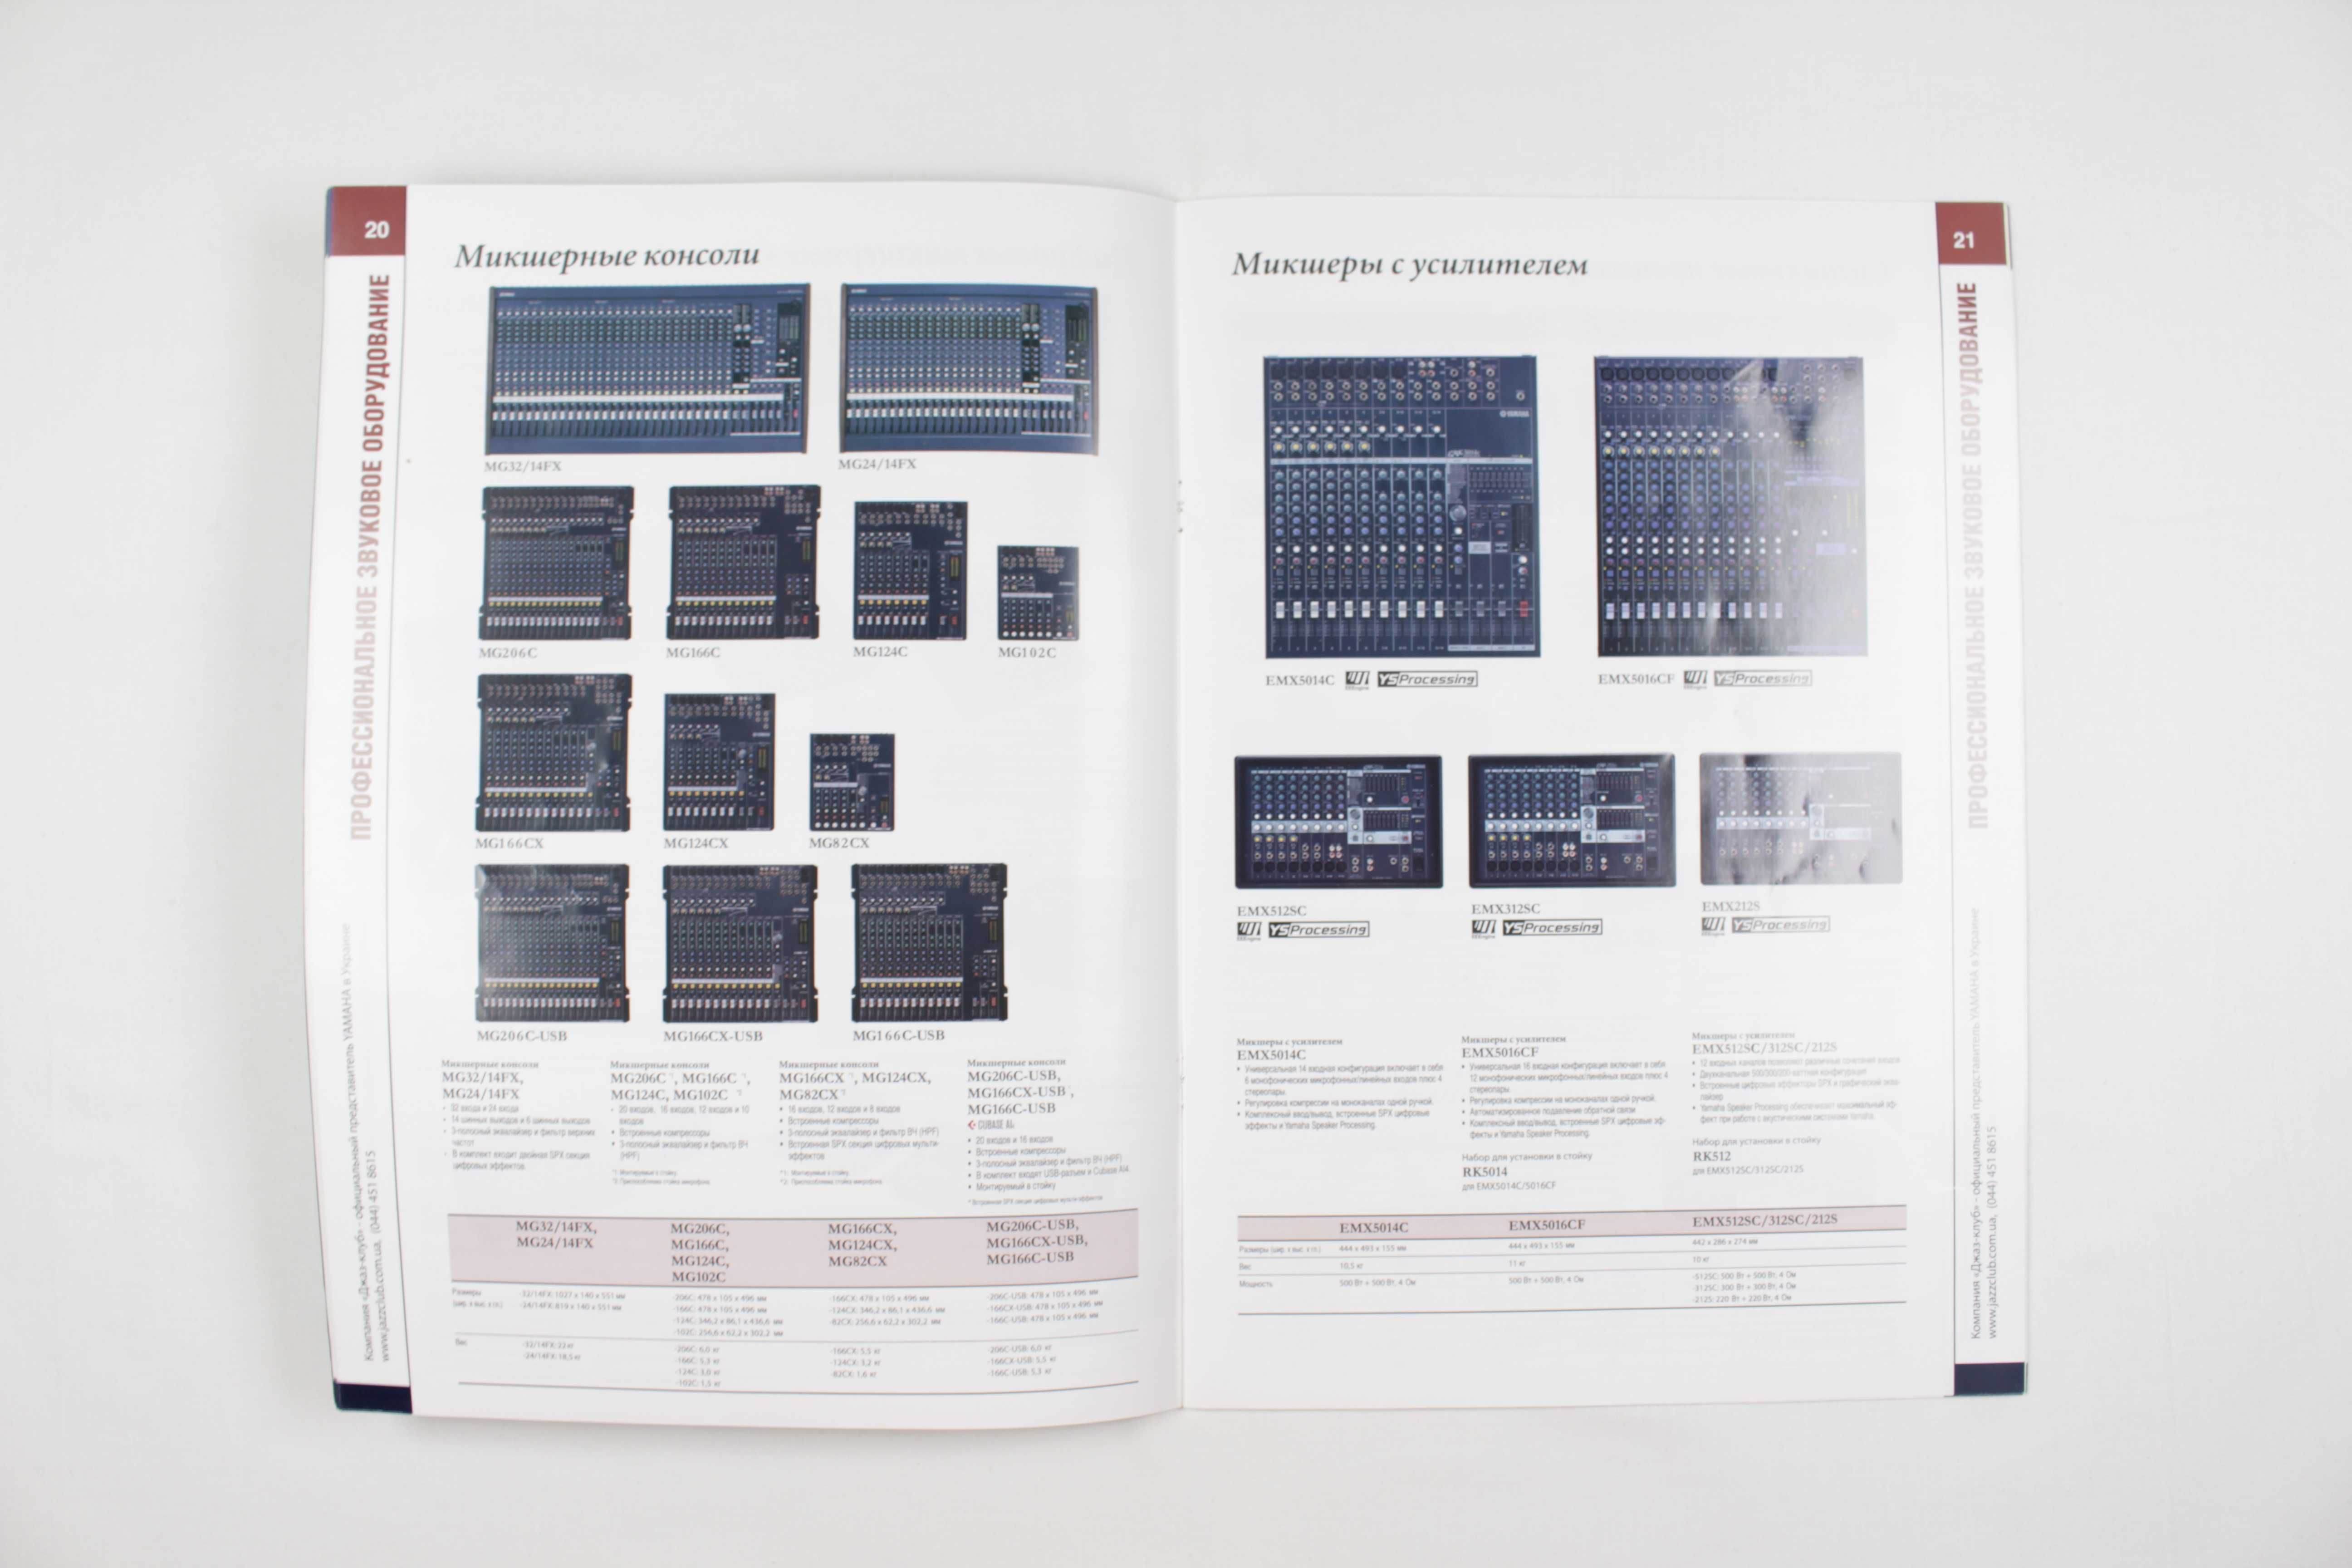 Музыкальный каталог - журнал YAMAHA - продукция 2012 года